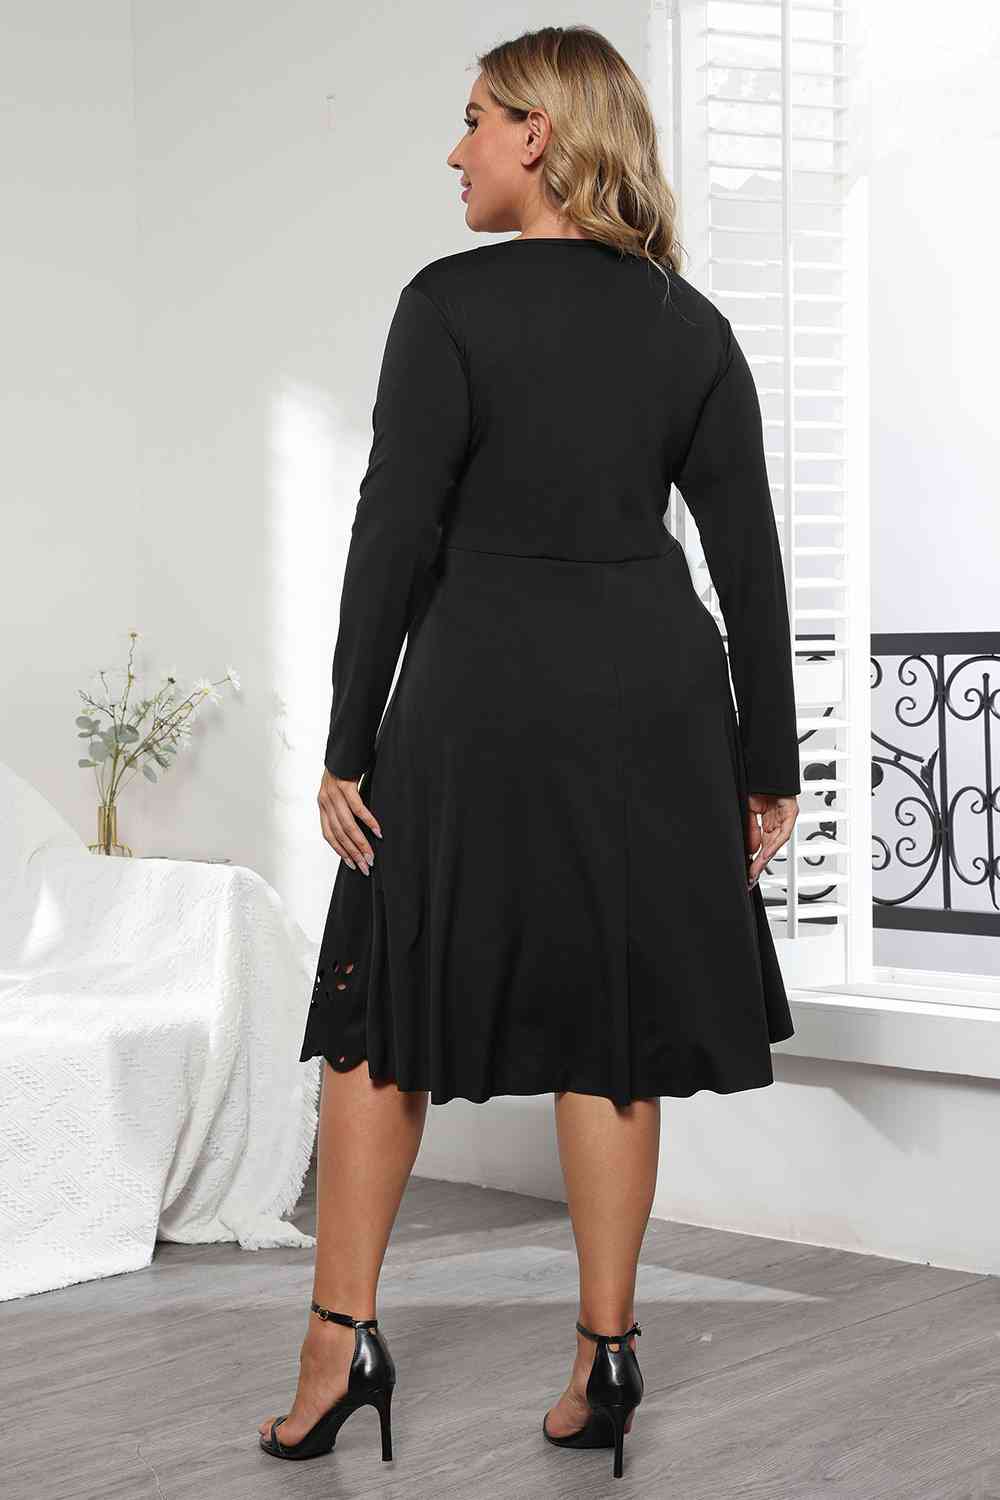 Long Sleeve Cutout Detail Dress - GemThreads Boutique